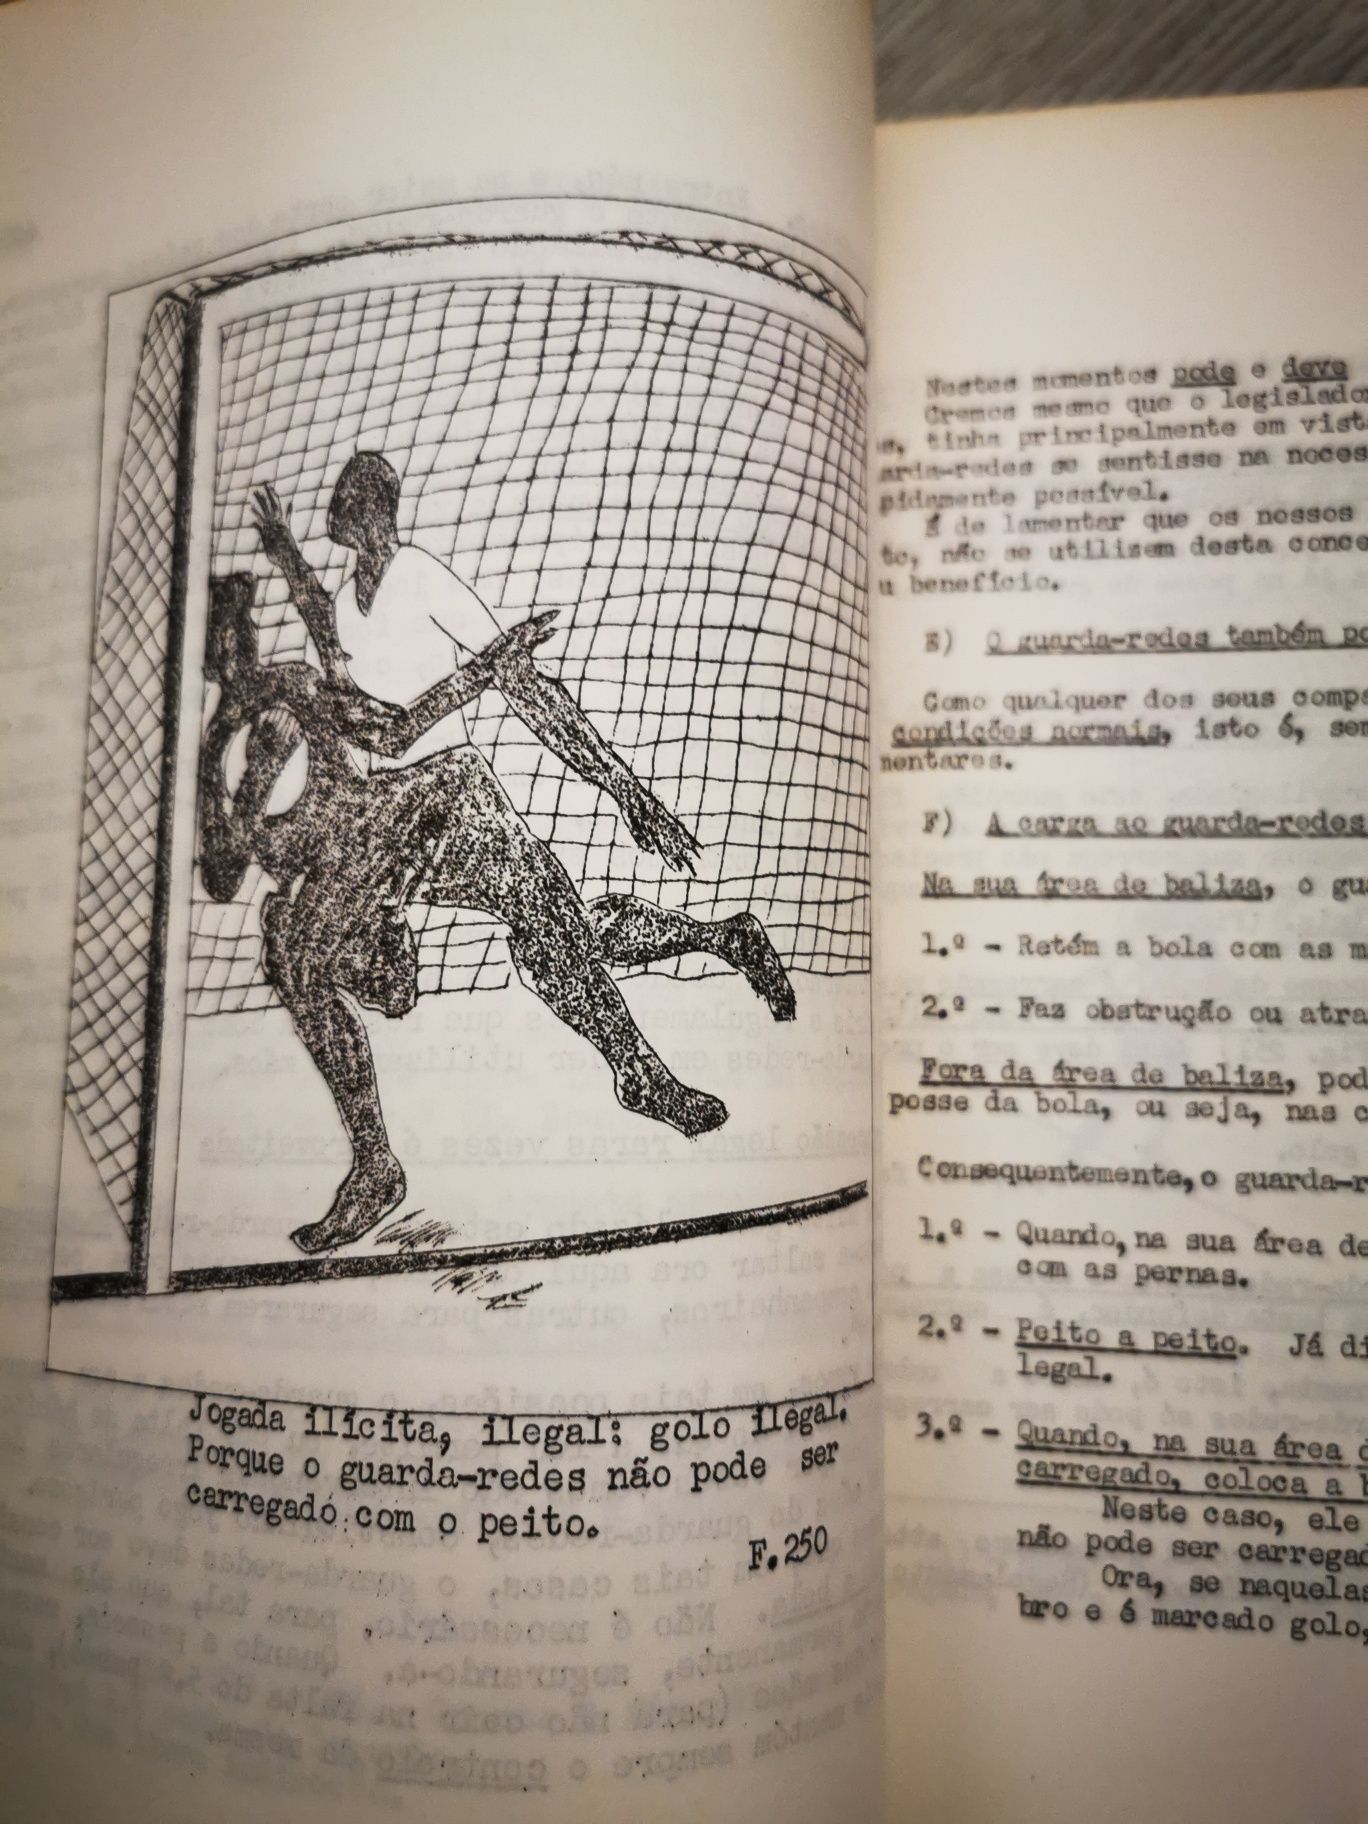 Livro - Tratado ilustrado de Leis de Futebol